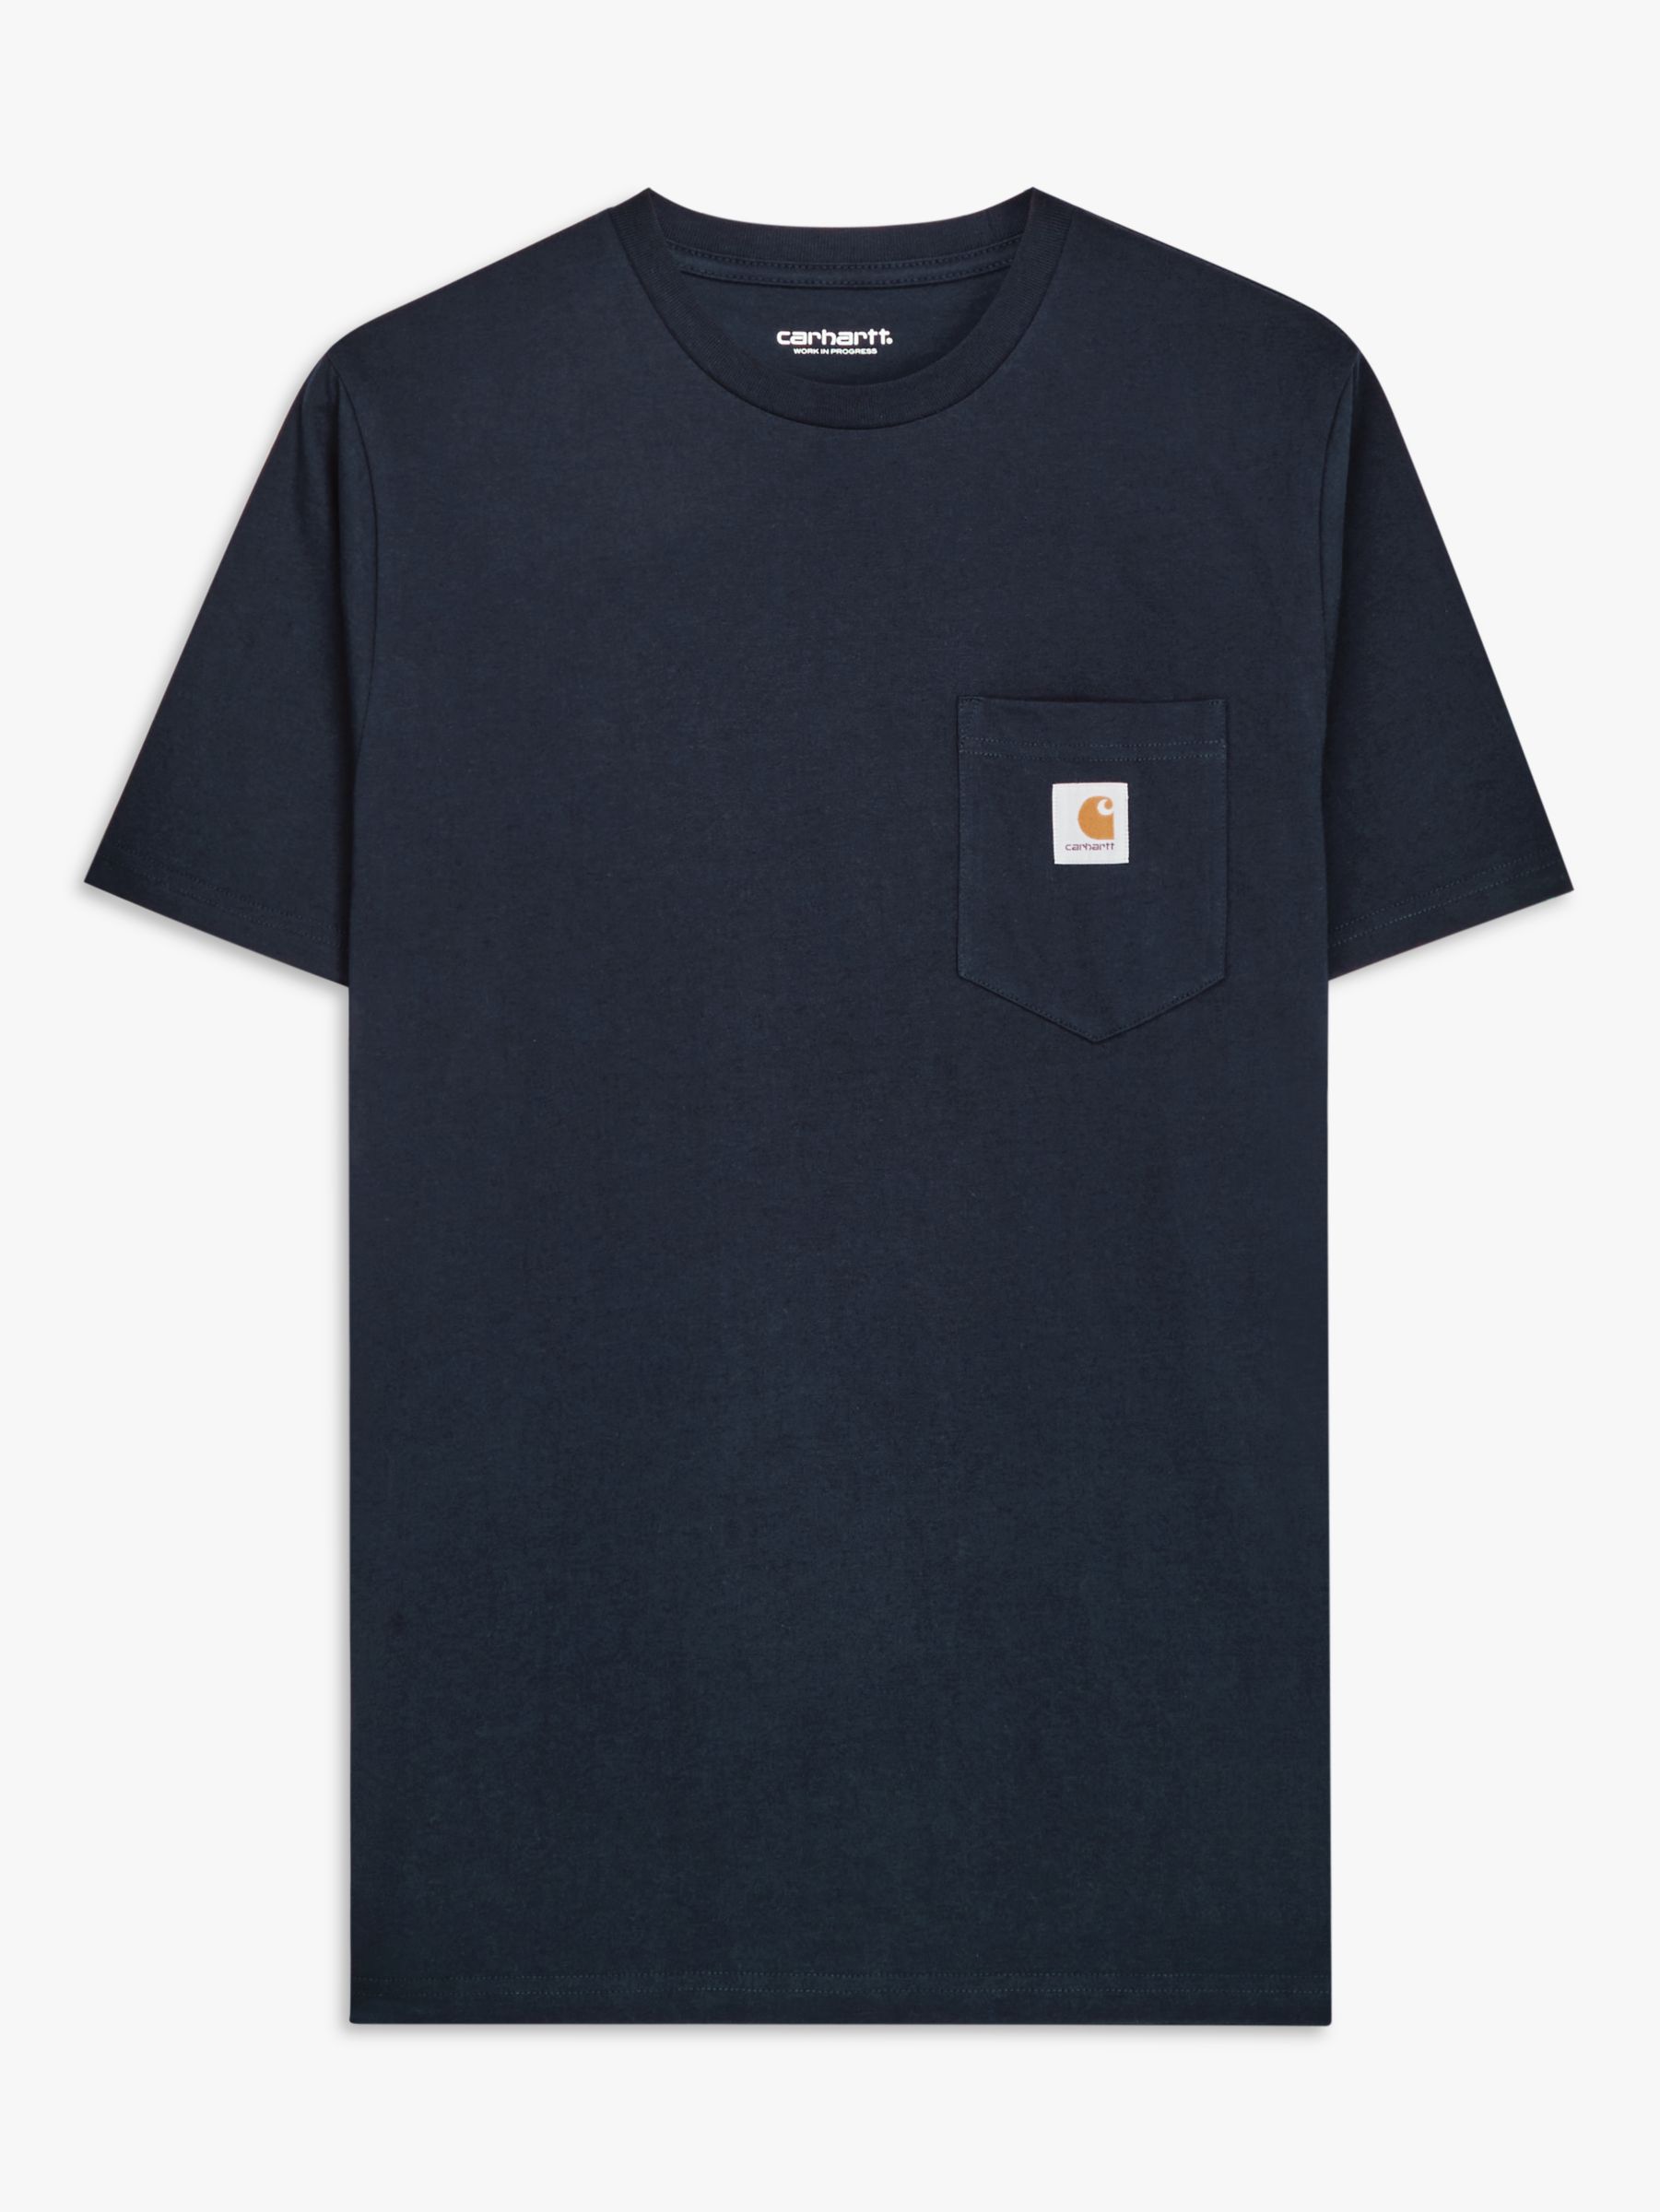 Carhartt WIP Short Sleeve Pocket T-Shirt, Dark Navy, S